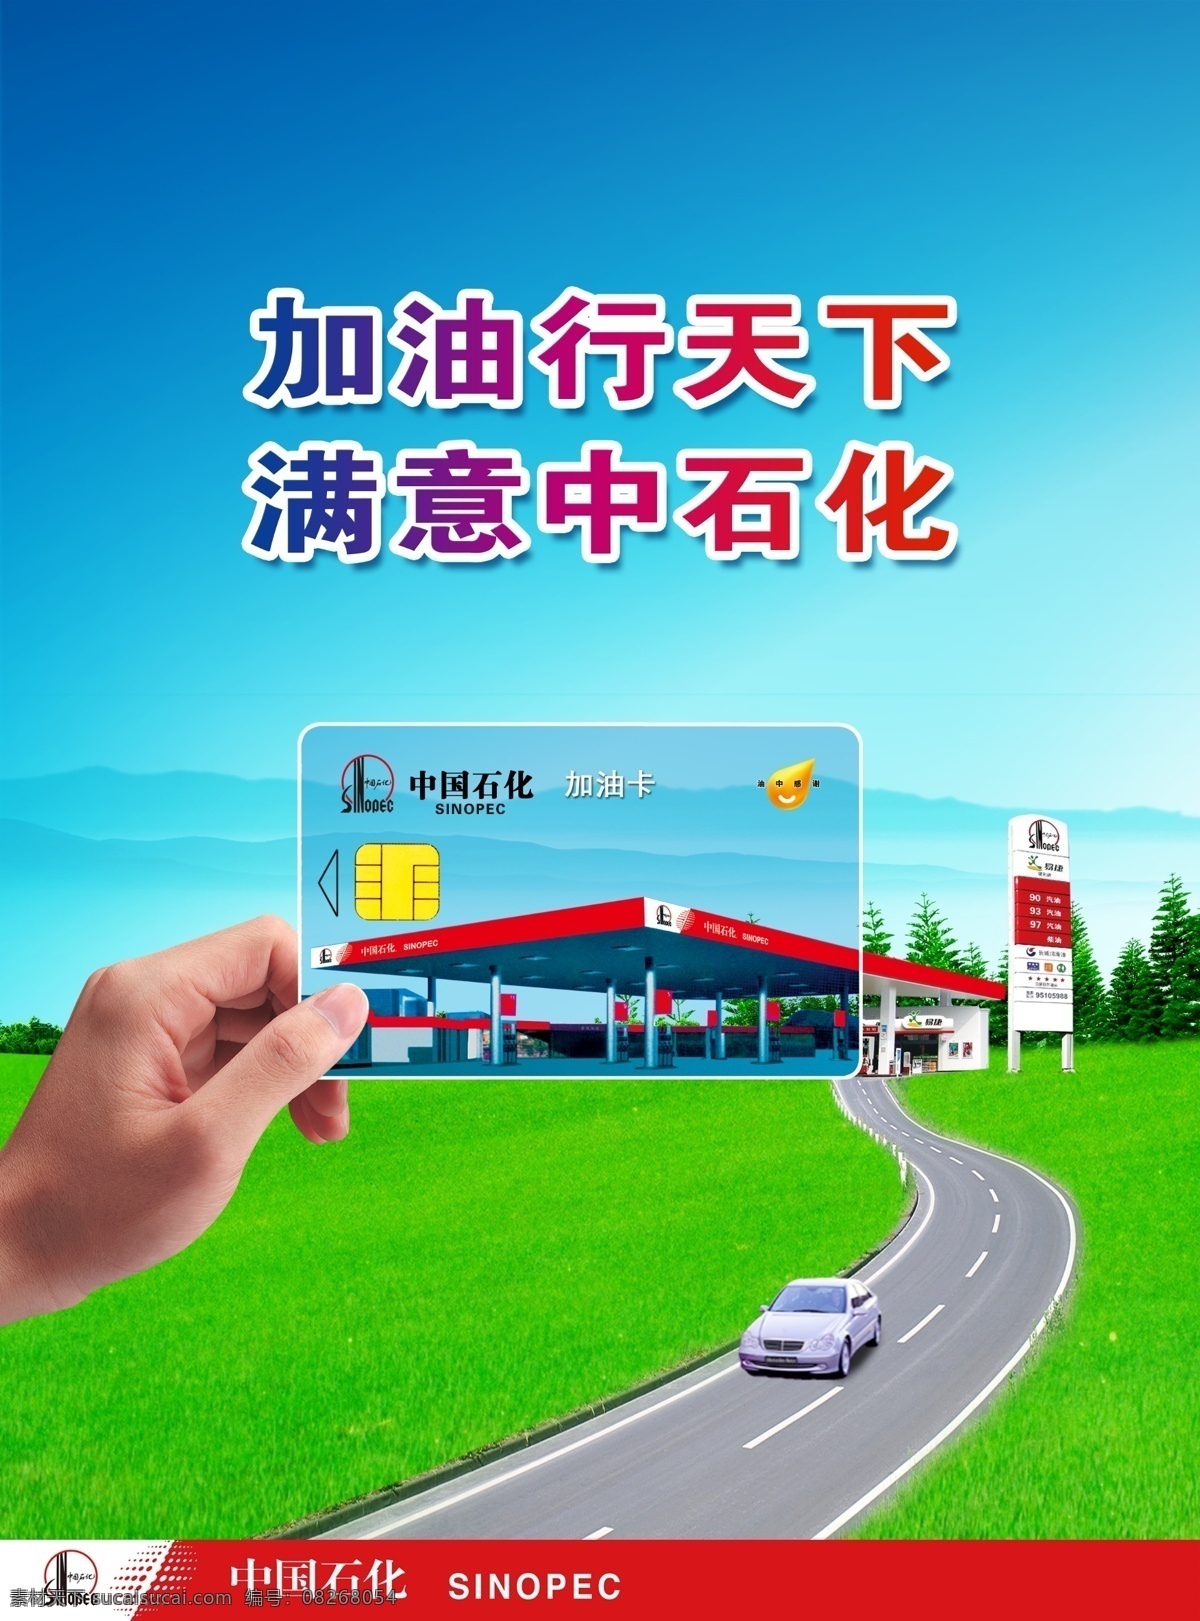 中国石化 杂志 持卡 篇 模版下载 持卡篇 加油卡 充值卡 加油充值卡 个性定制 加油方便 广告设计模板 源文件